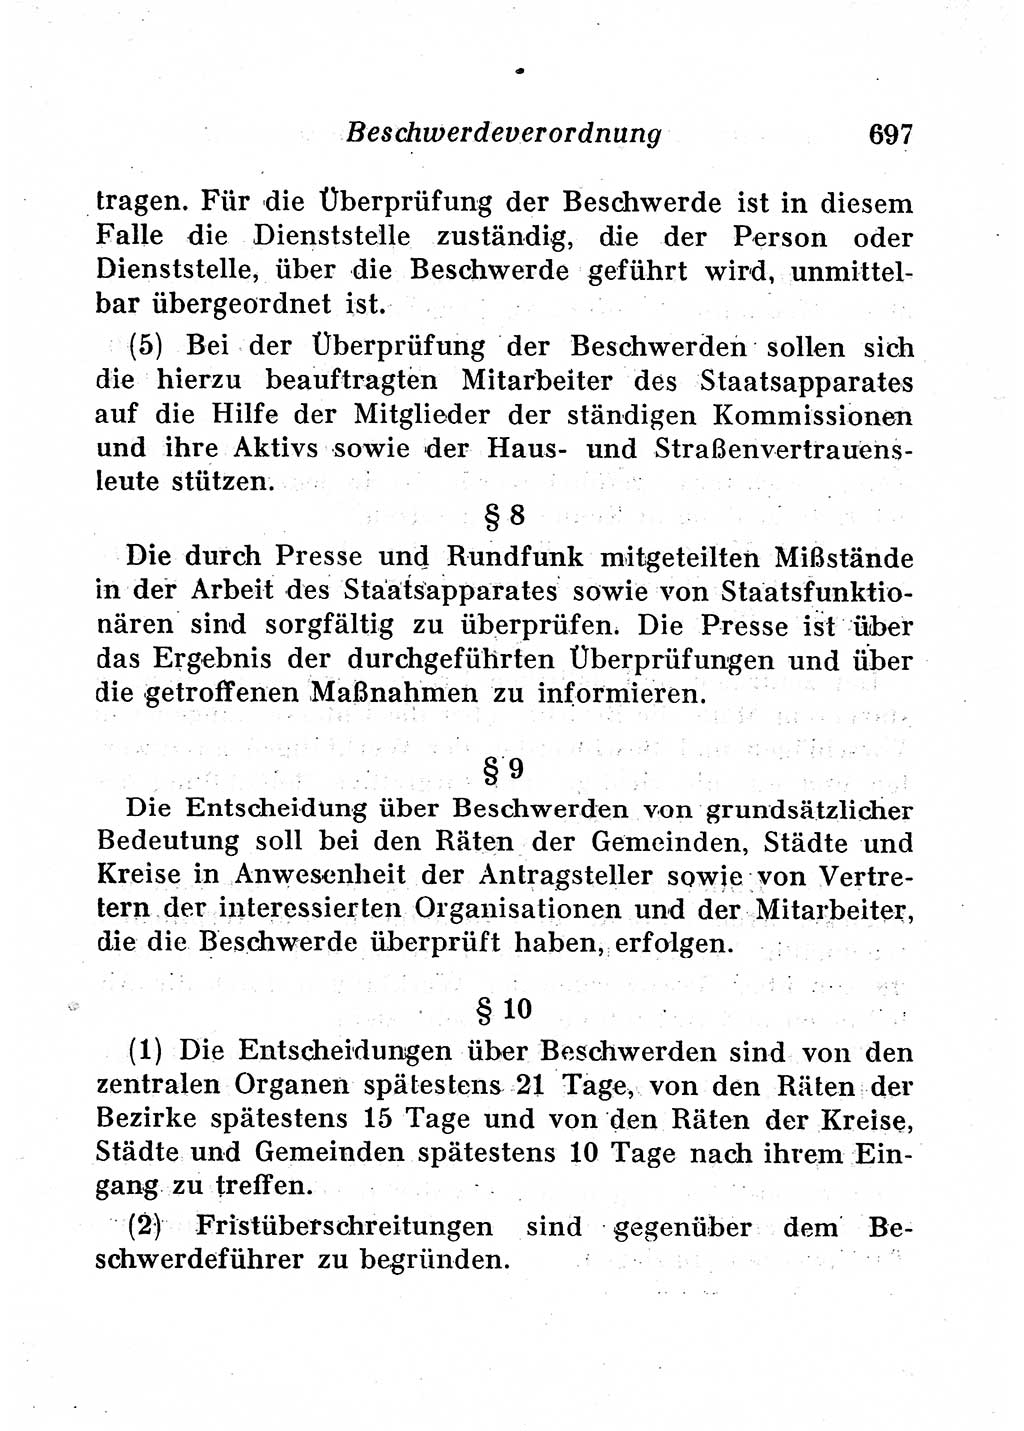 Staats- und verwaltungsrechtliche Gesetze der Deutschen Demokratischen Republik (DDR) 1958, Seite 697 (StVerwR Ges. DDR 1958, S. 697)